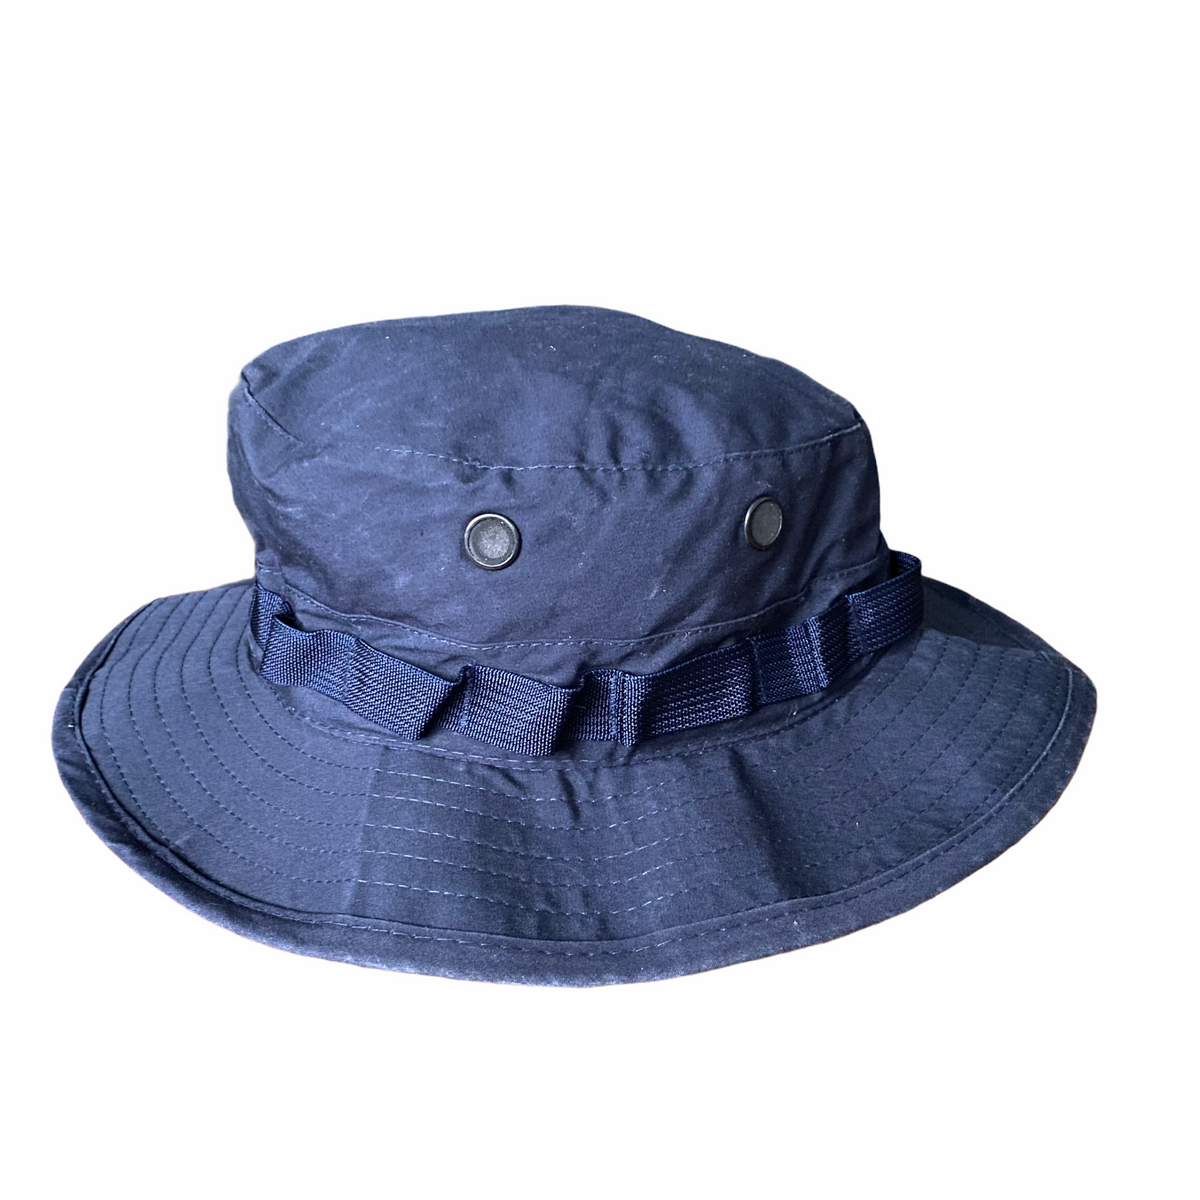 Vintage Navy Blue Boonie Hat Size M/L – ROCKHOPPER VINTAGE